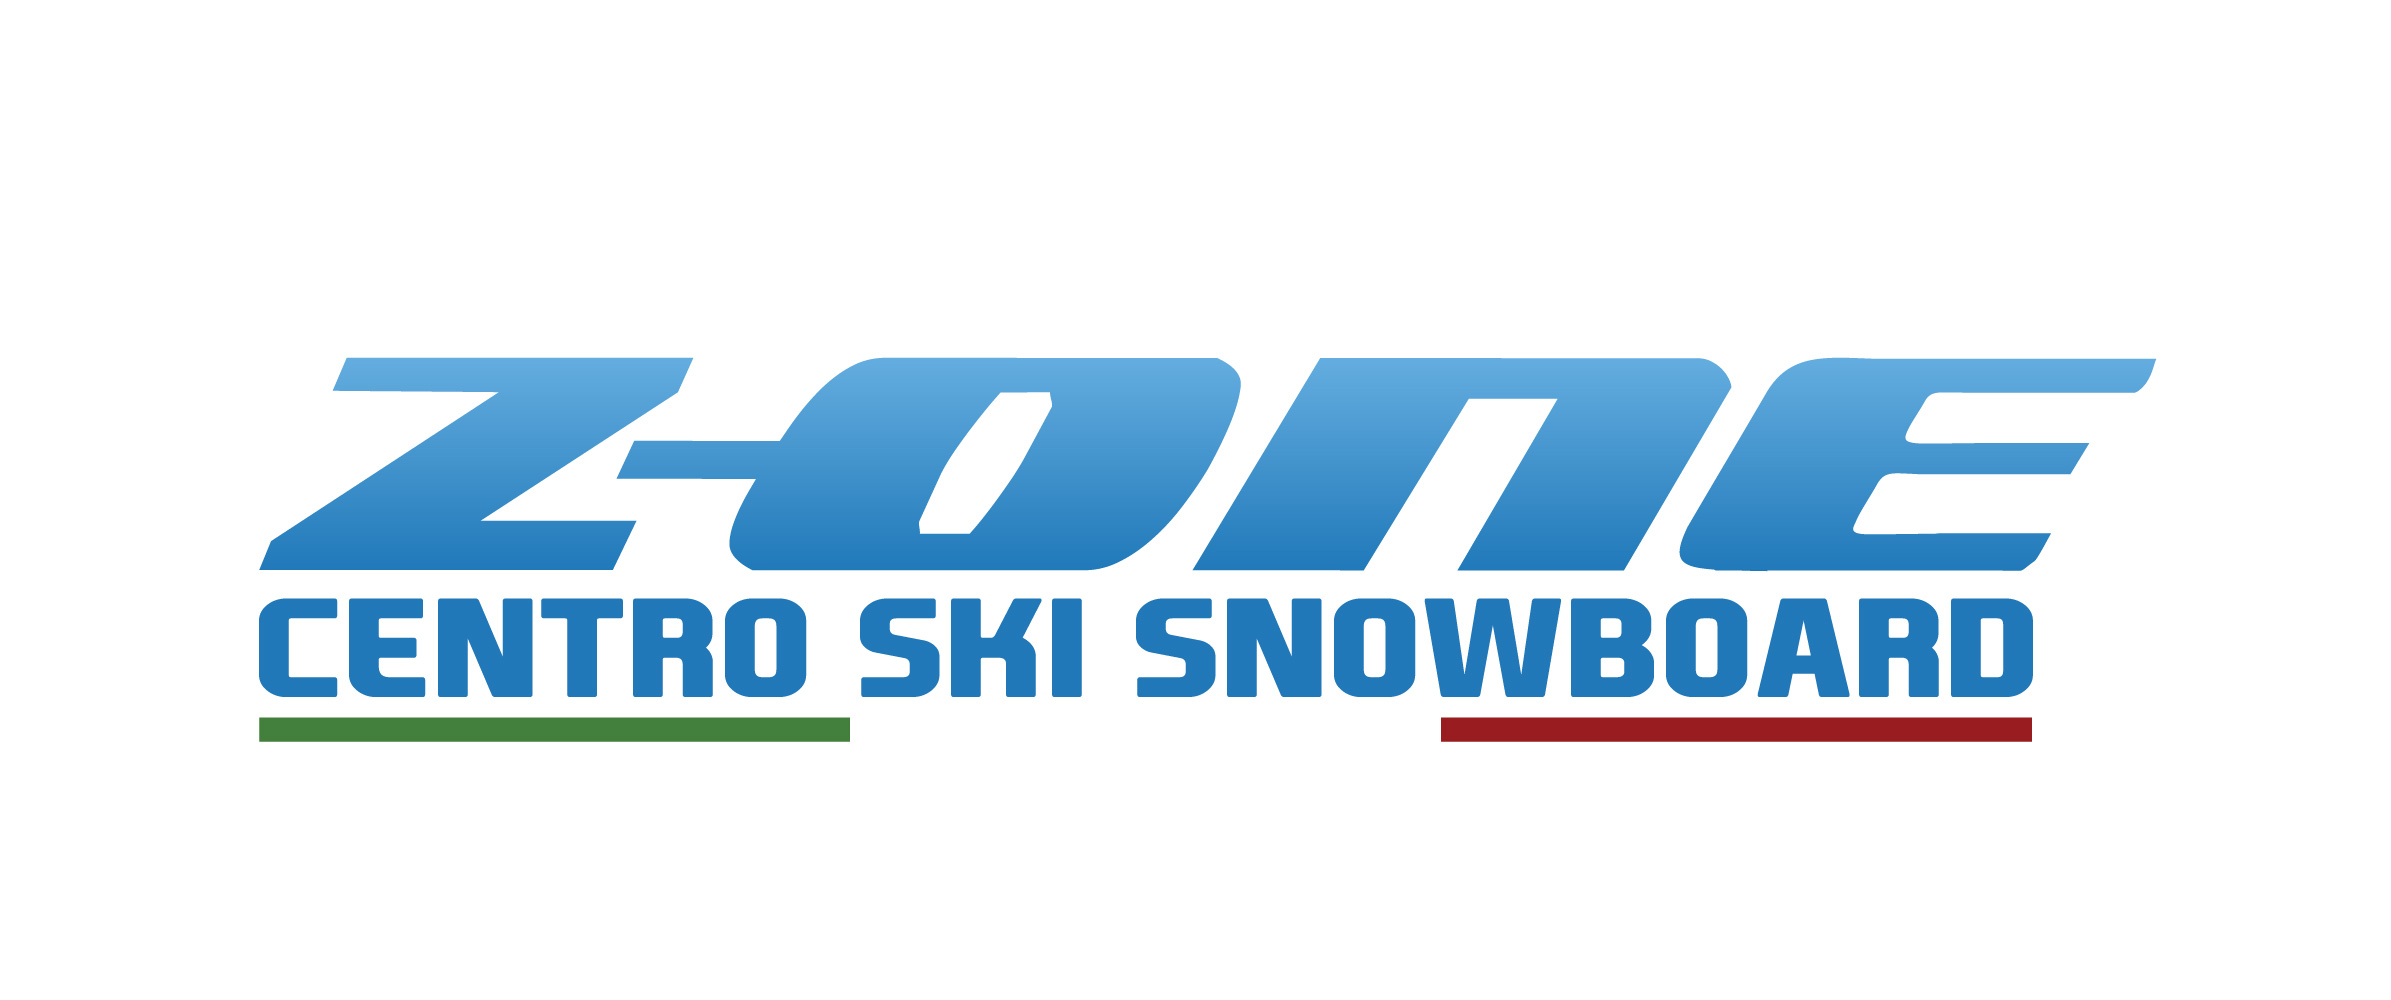 Centro Snowboard – Z-One – Noleggio Sci Snowboard